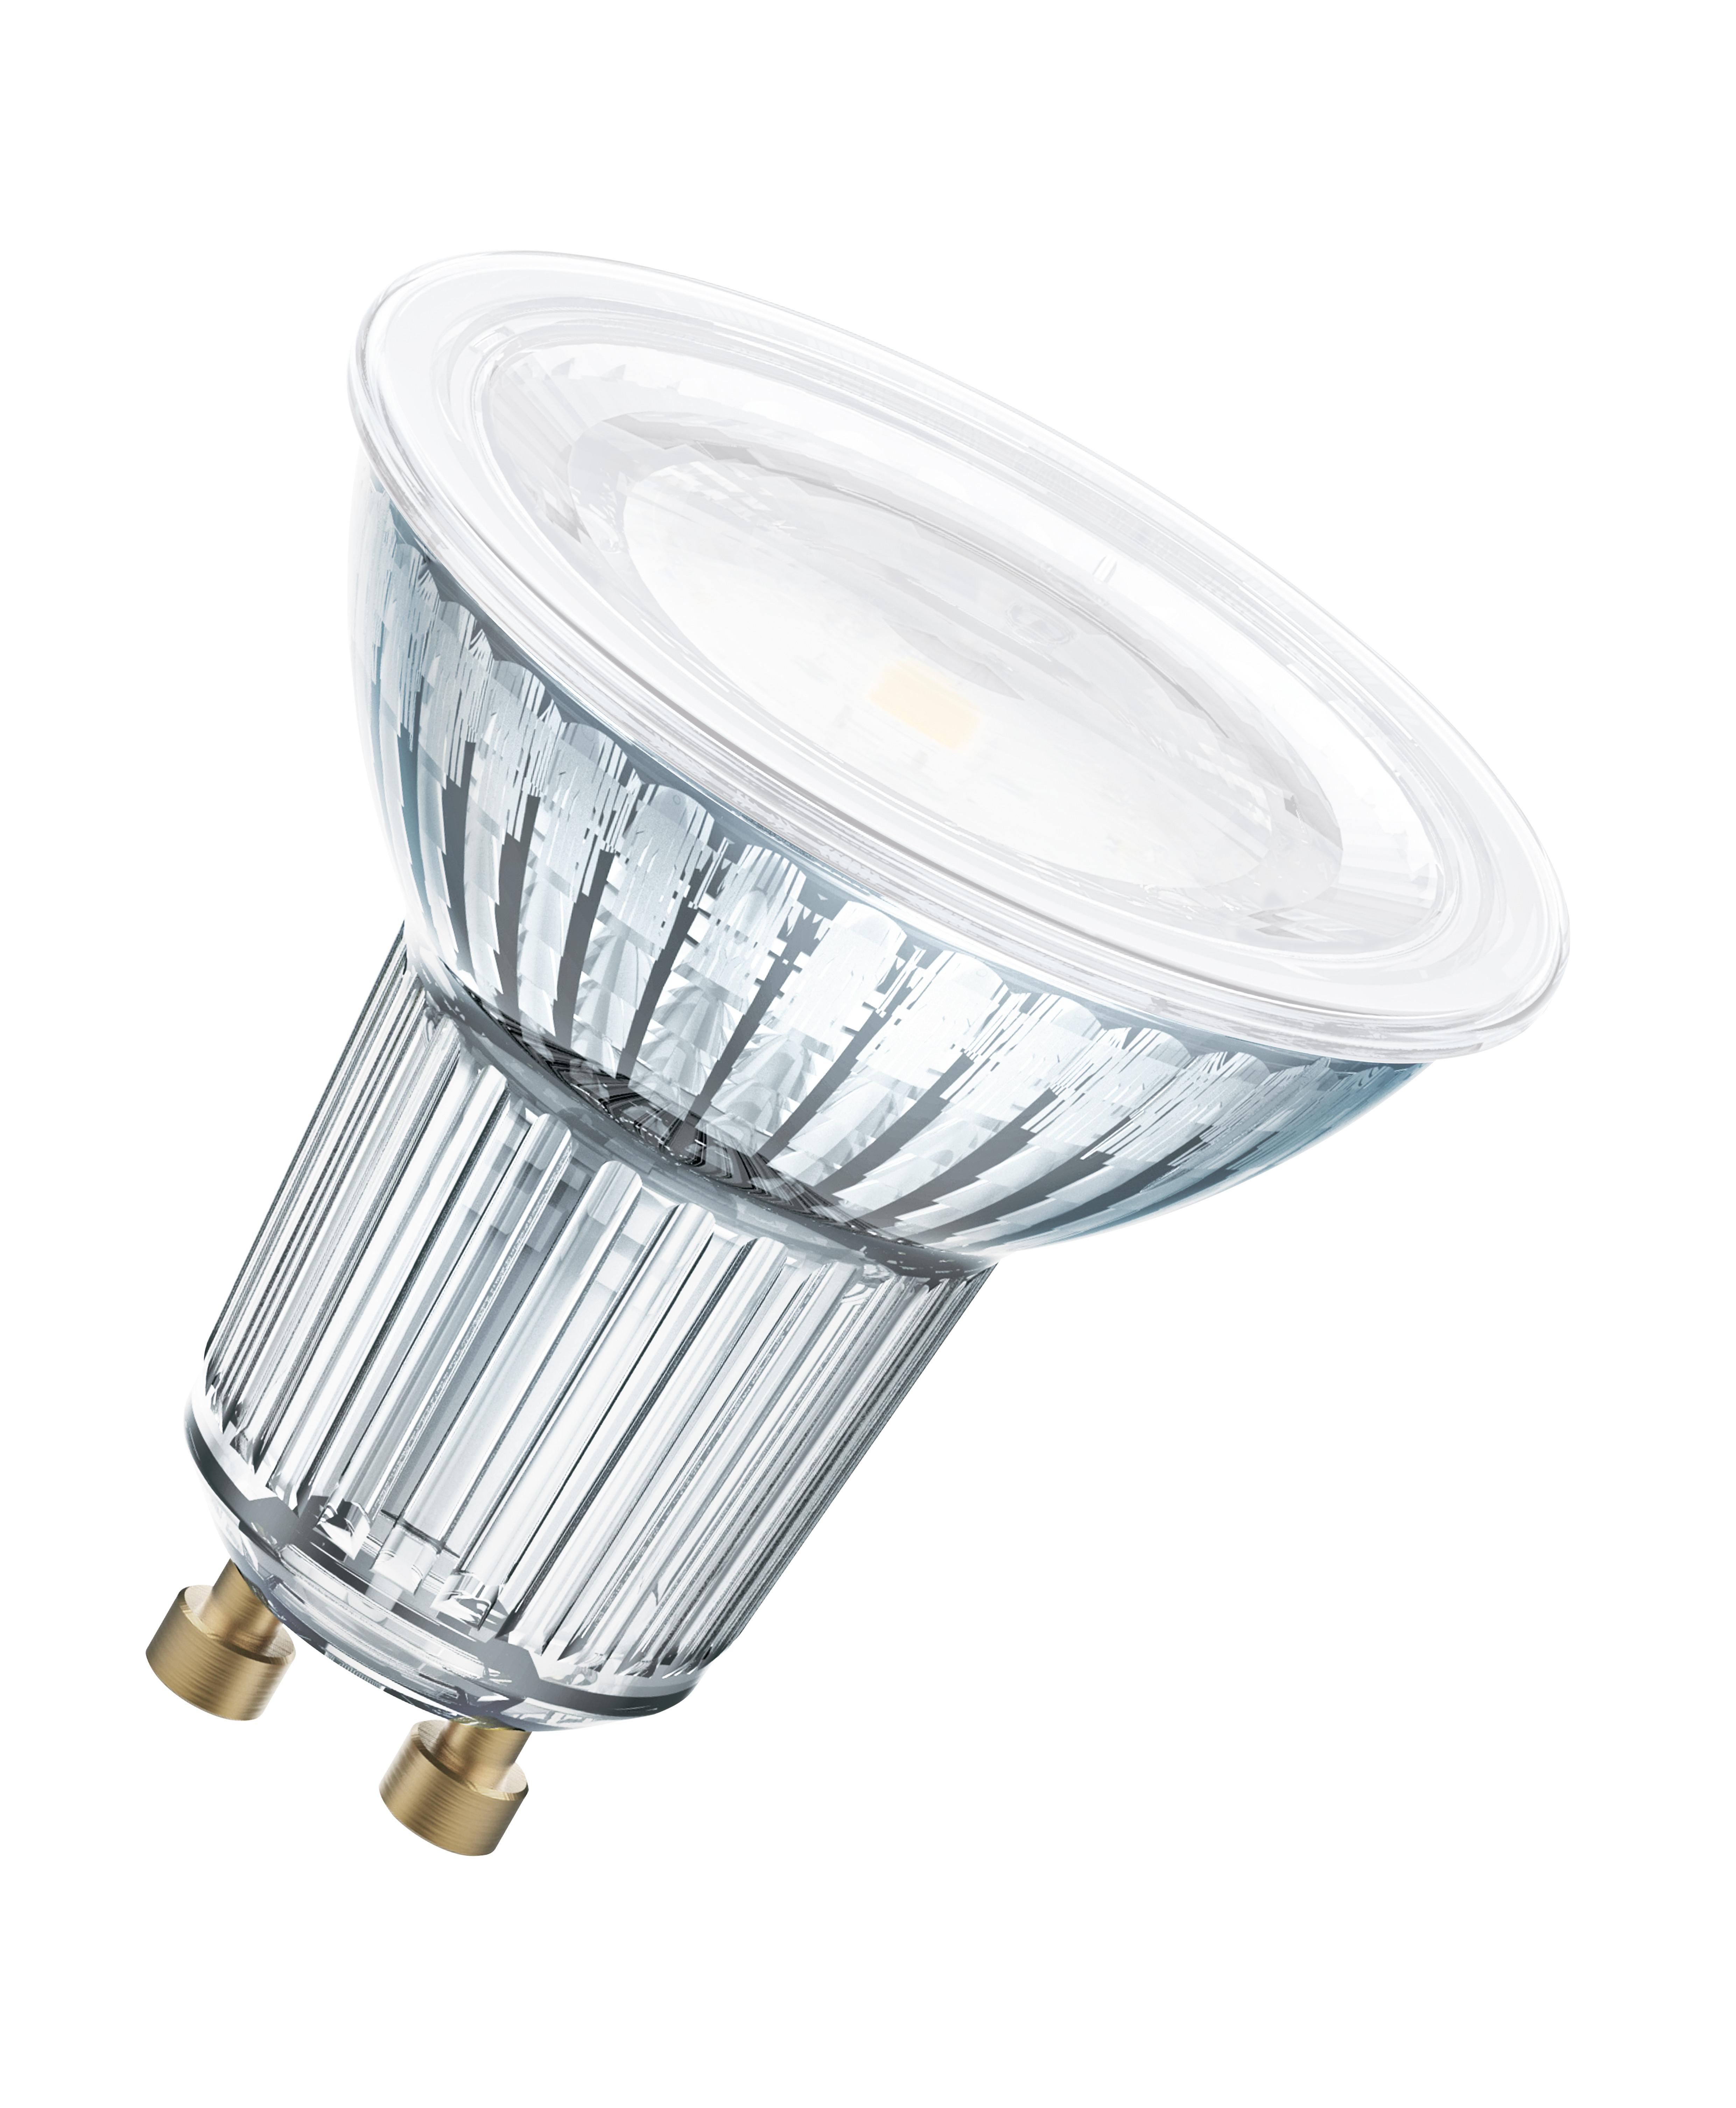 Osram Светодиодная лампа PARATHOM PAR16 4,3W(замена 50Вт),120°,нейтральный белый свет(830), цоколь GU10